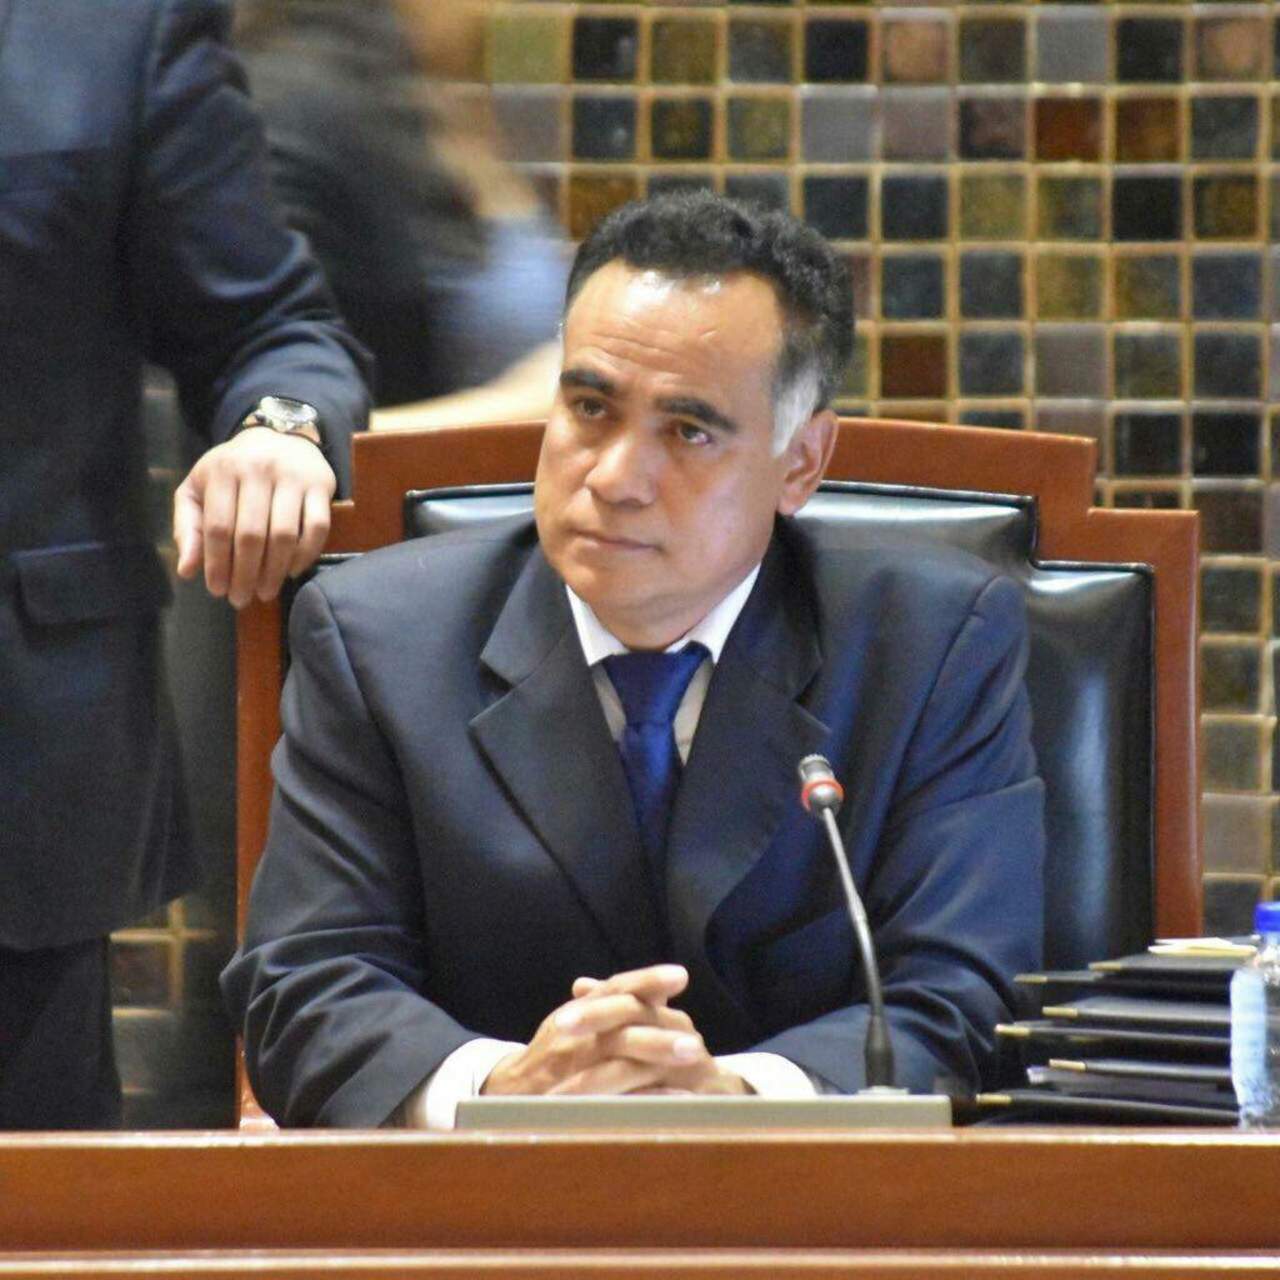 El diputado local del PRD, Saúl Galindo, fue ejecutado ayer en el Municipio de Tomatlán, con lo cual suman tres políticos asesinados en Jalisco en lo que va del mes. (TWITTER)